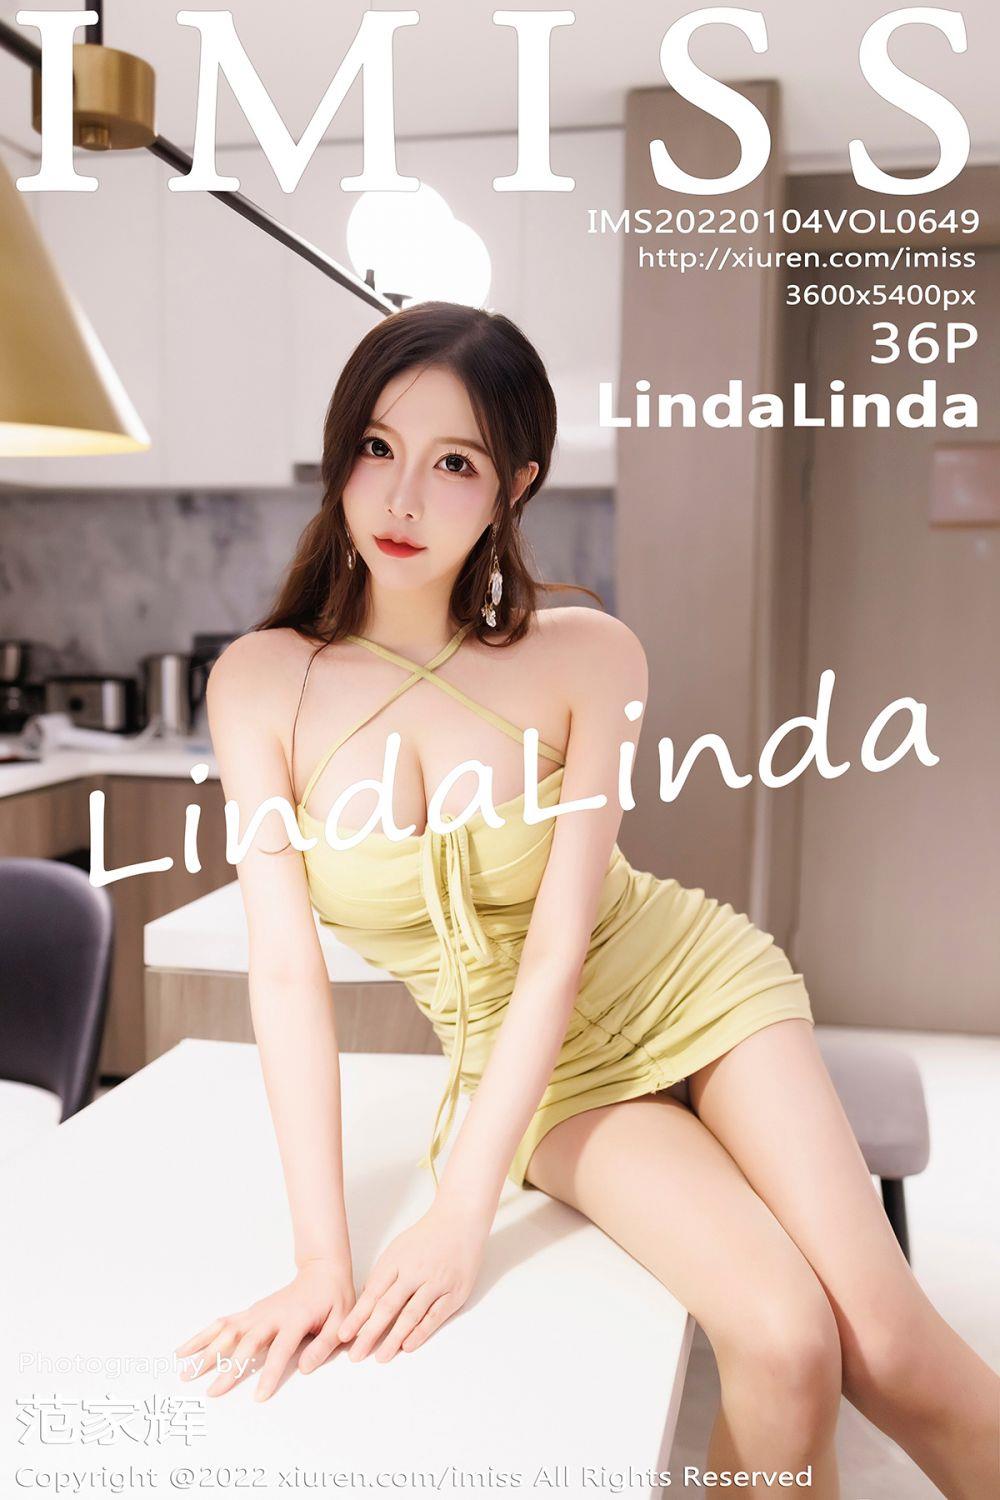 IMISS 爱蜜社 2022.01.04 Vol.649 LindaLinda - 37.jpg